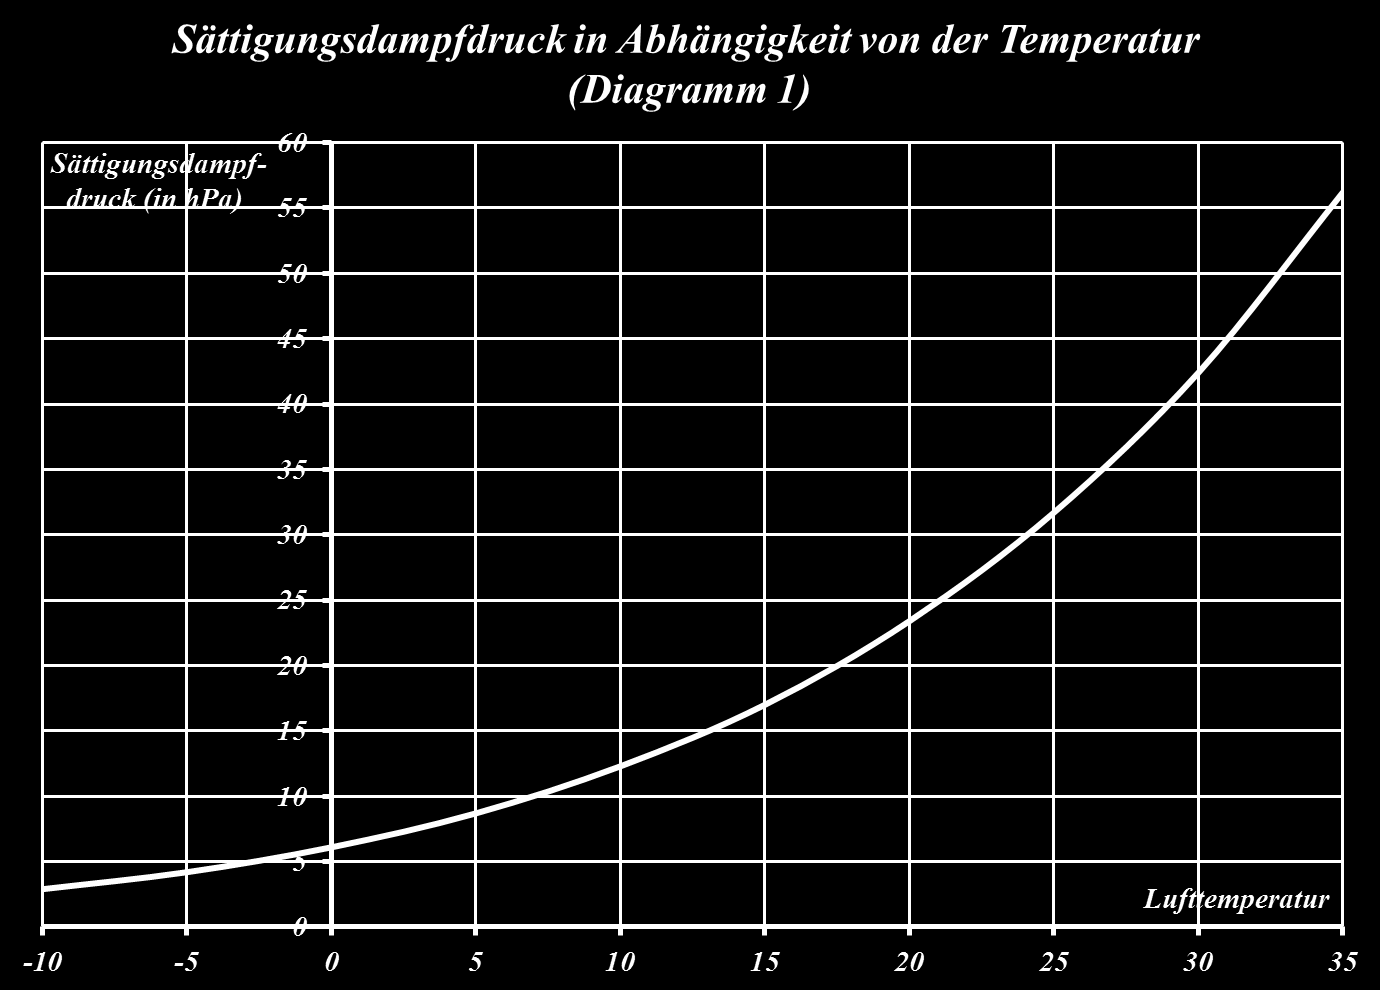 . Feuchte Luft hat eine geringere Dichte als 2. Feuchte Luft hat eine geringere Dichte als trockene Luft bei gleicher Temperatur. (siehe Diagramm 2). D.h.: haben trockene und feuchte Luft die gleiche Temperatur, dann ist die feuchte Luft leichter als die trockene.